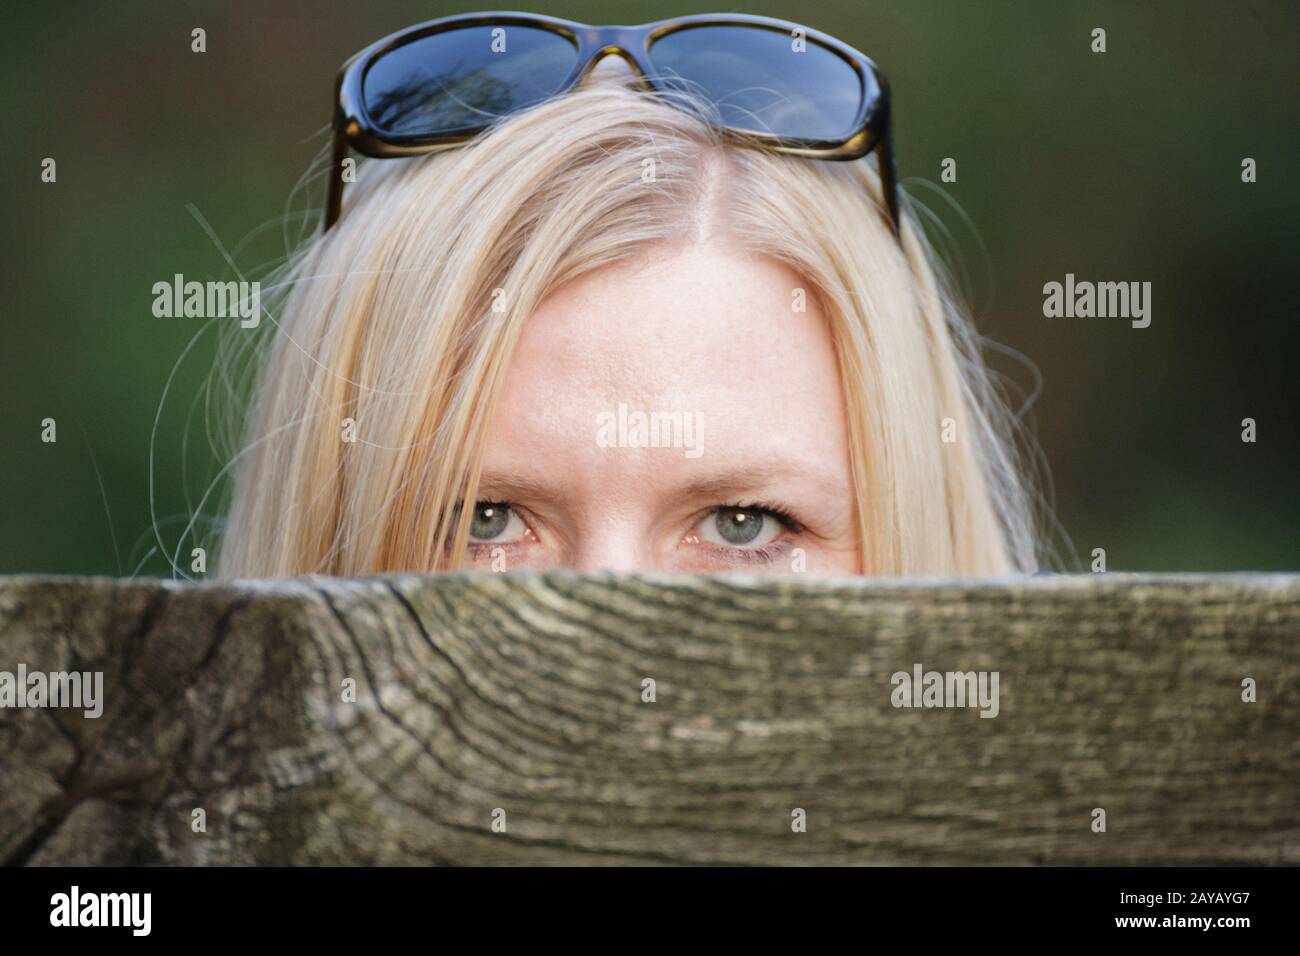 Acechar a la mujer detrás de una valla ocultando su rostro. Foto de stock